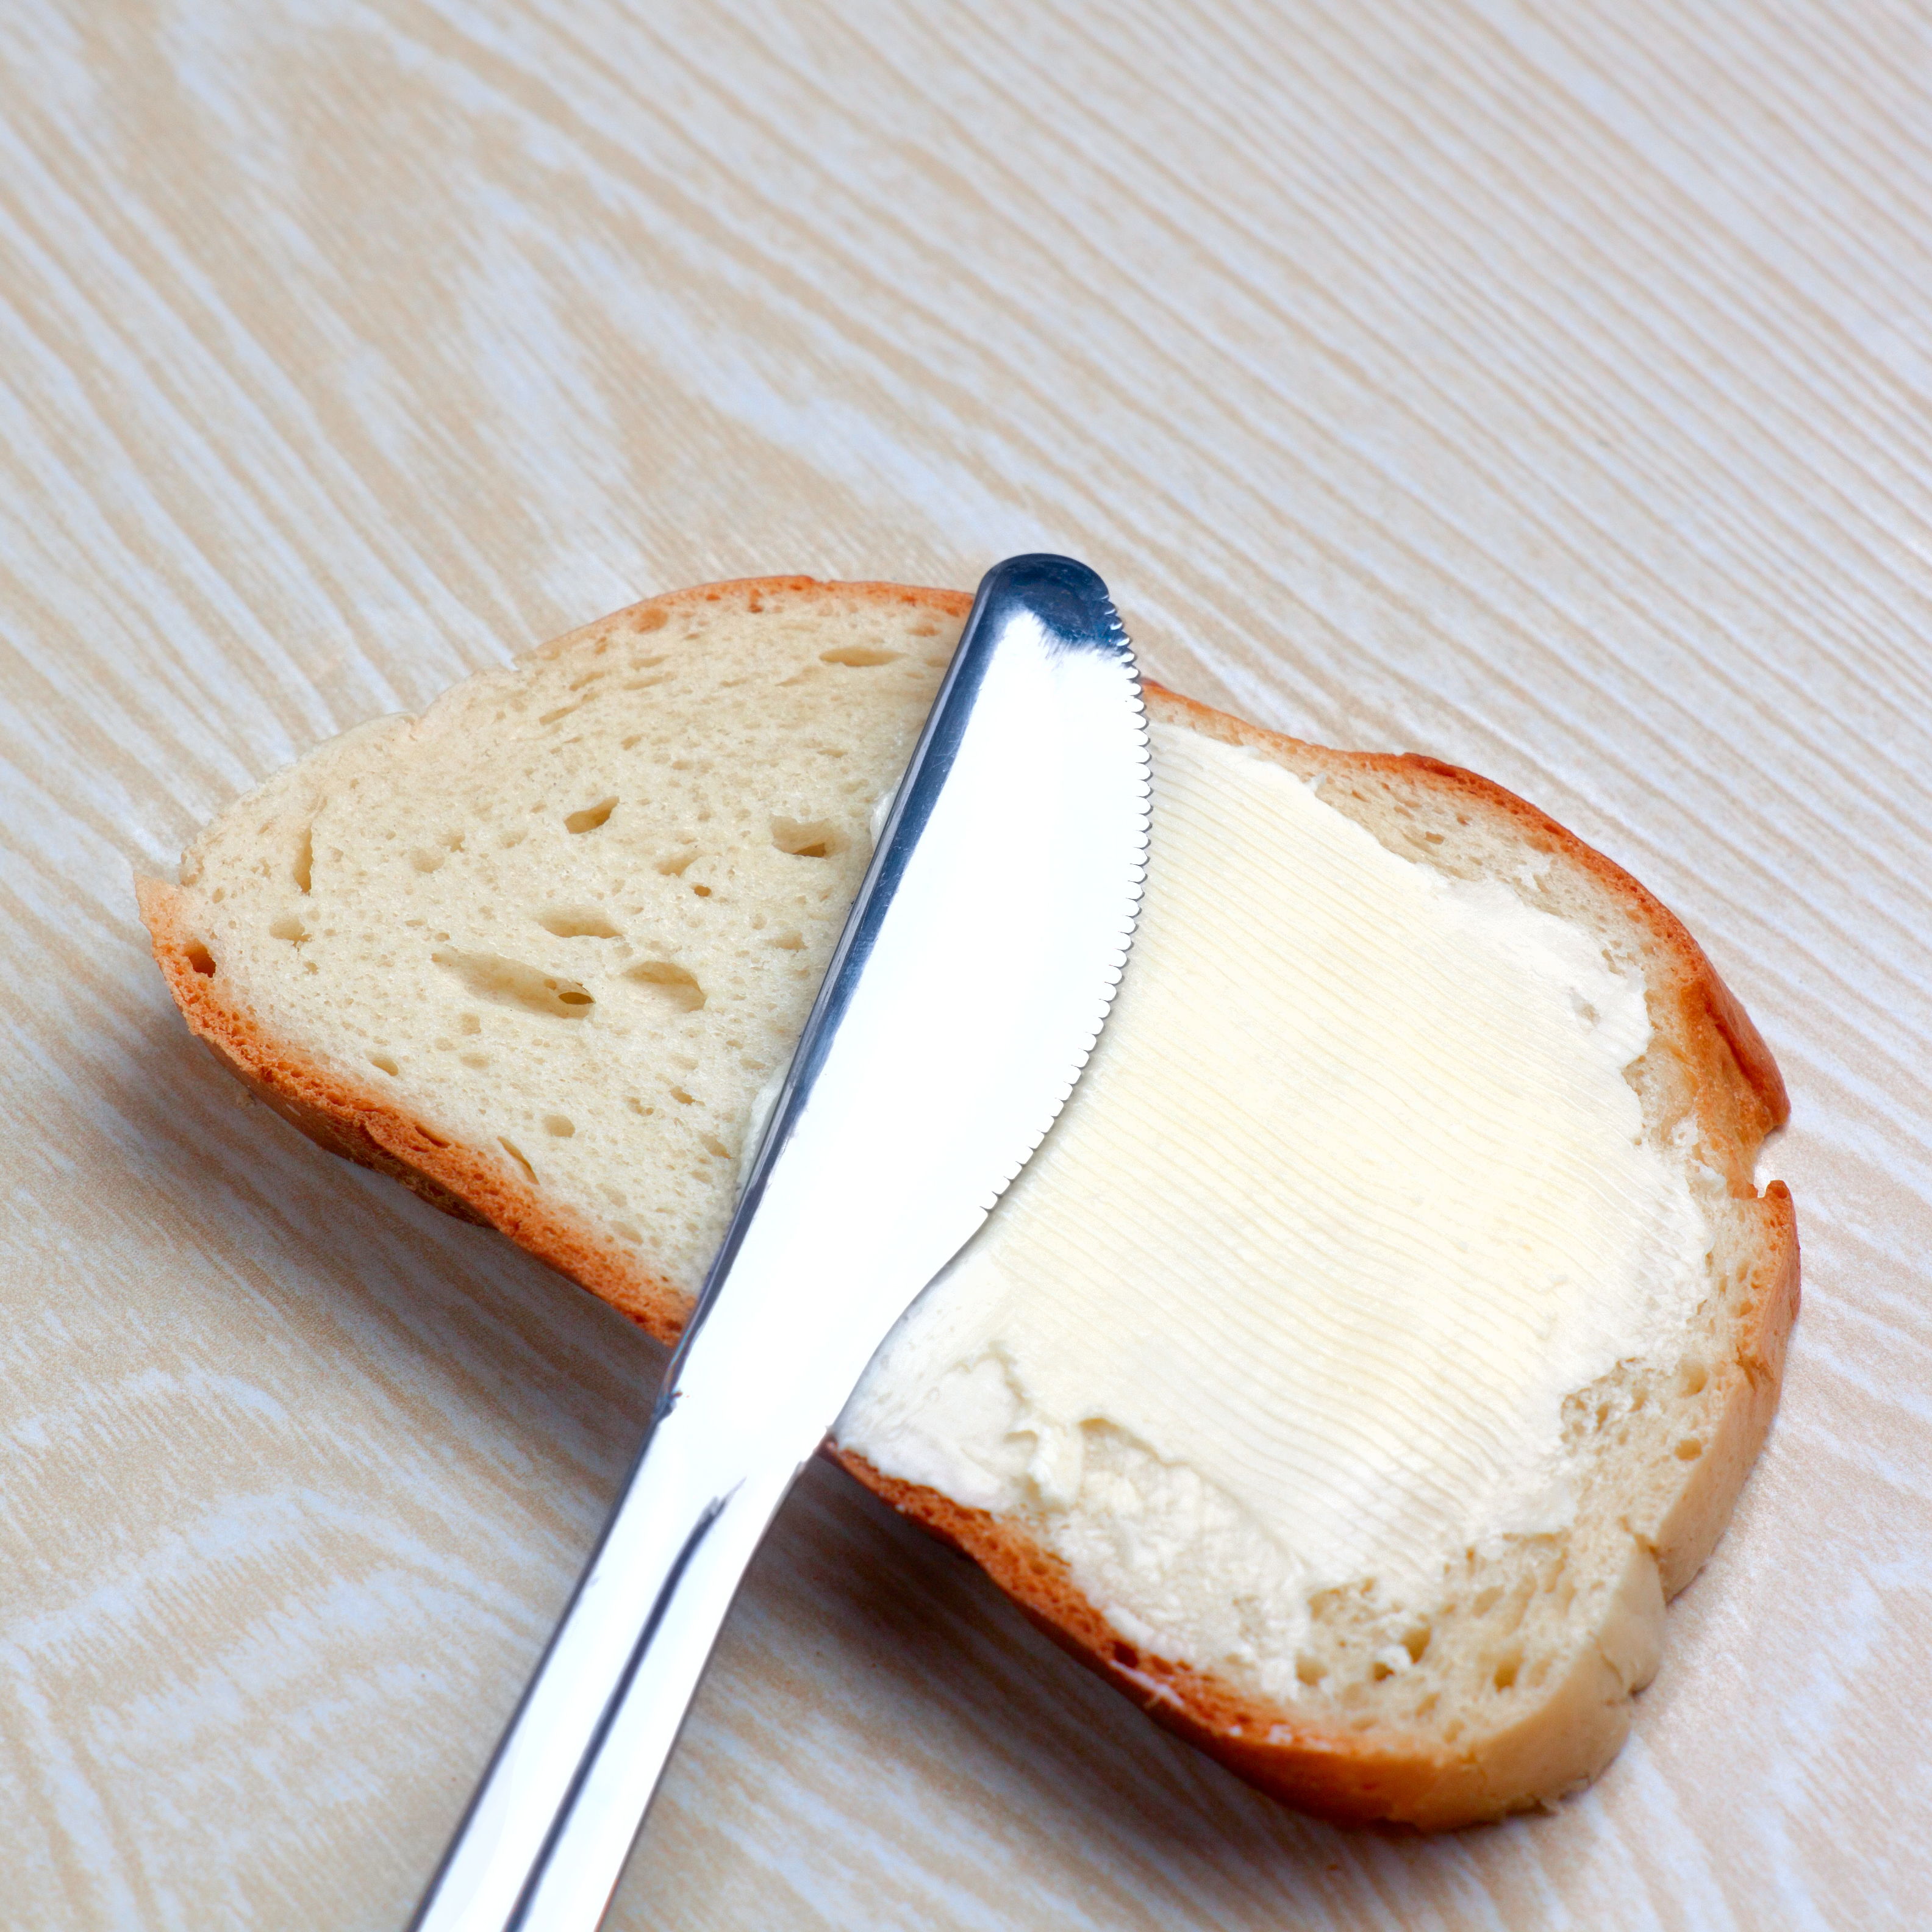 Хлеб с маслом грамм. Бутерброд со сливочным маслом. Сливочное масло на хлебе. Батон с маслом. Бутерброд хлеб с маслом.